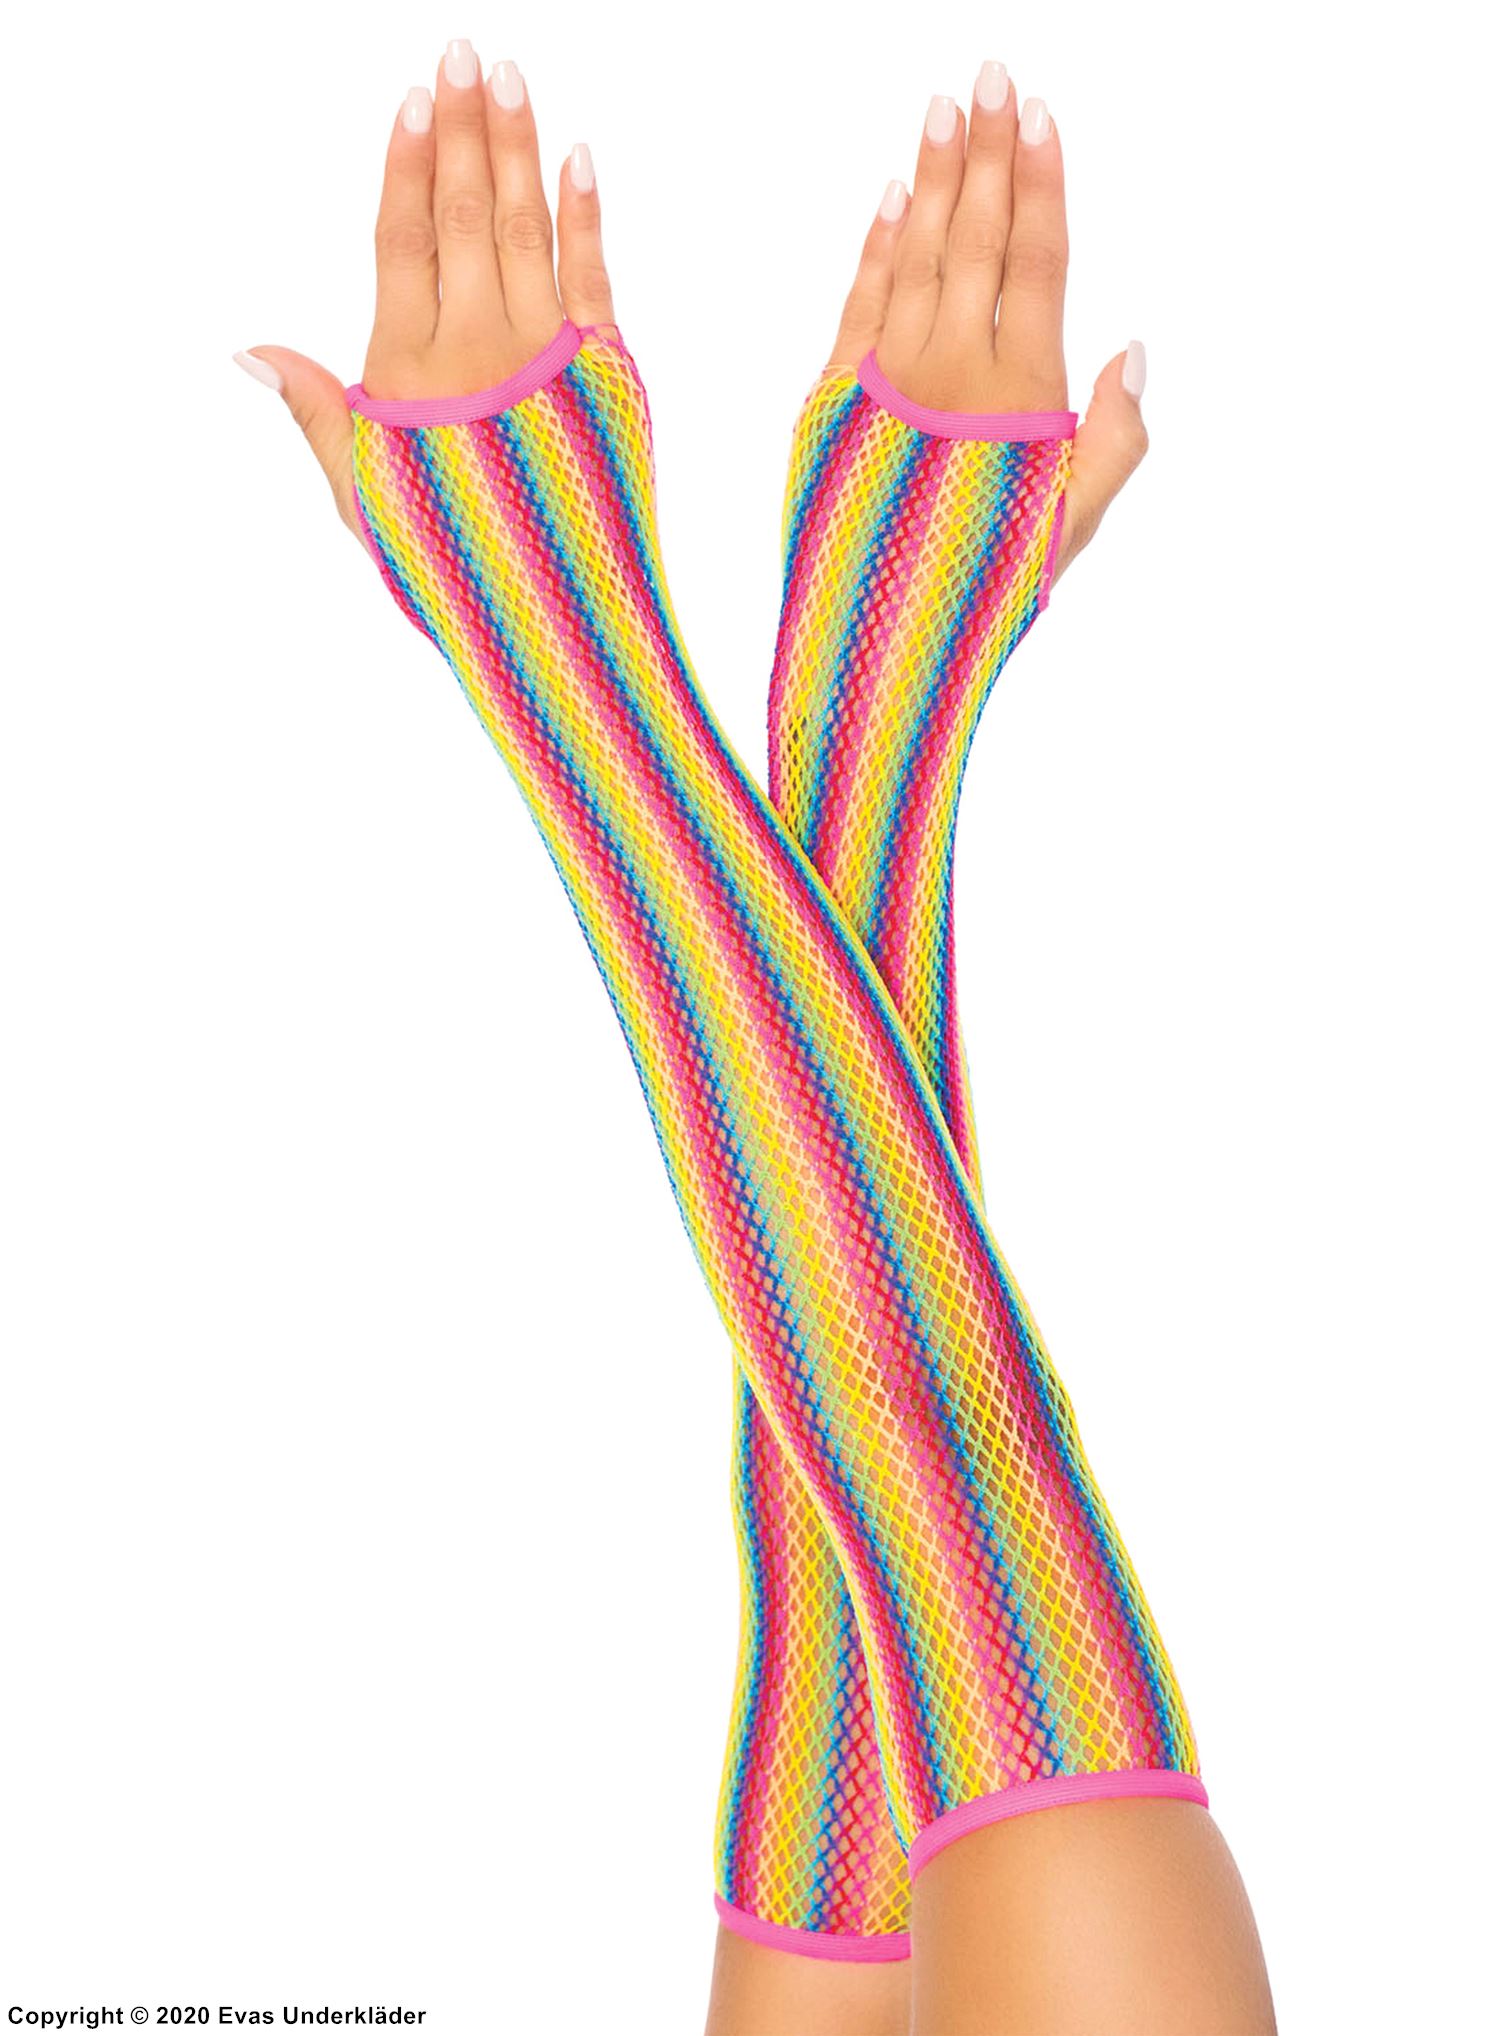 Fingerless gloves, fishnet, rainbow color